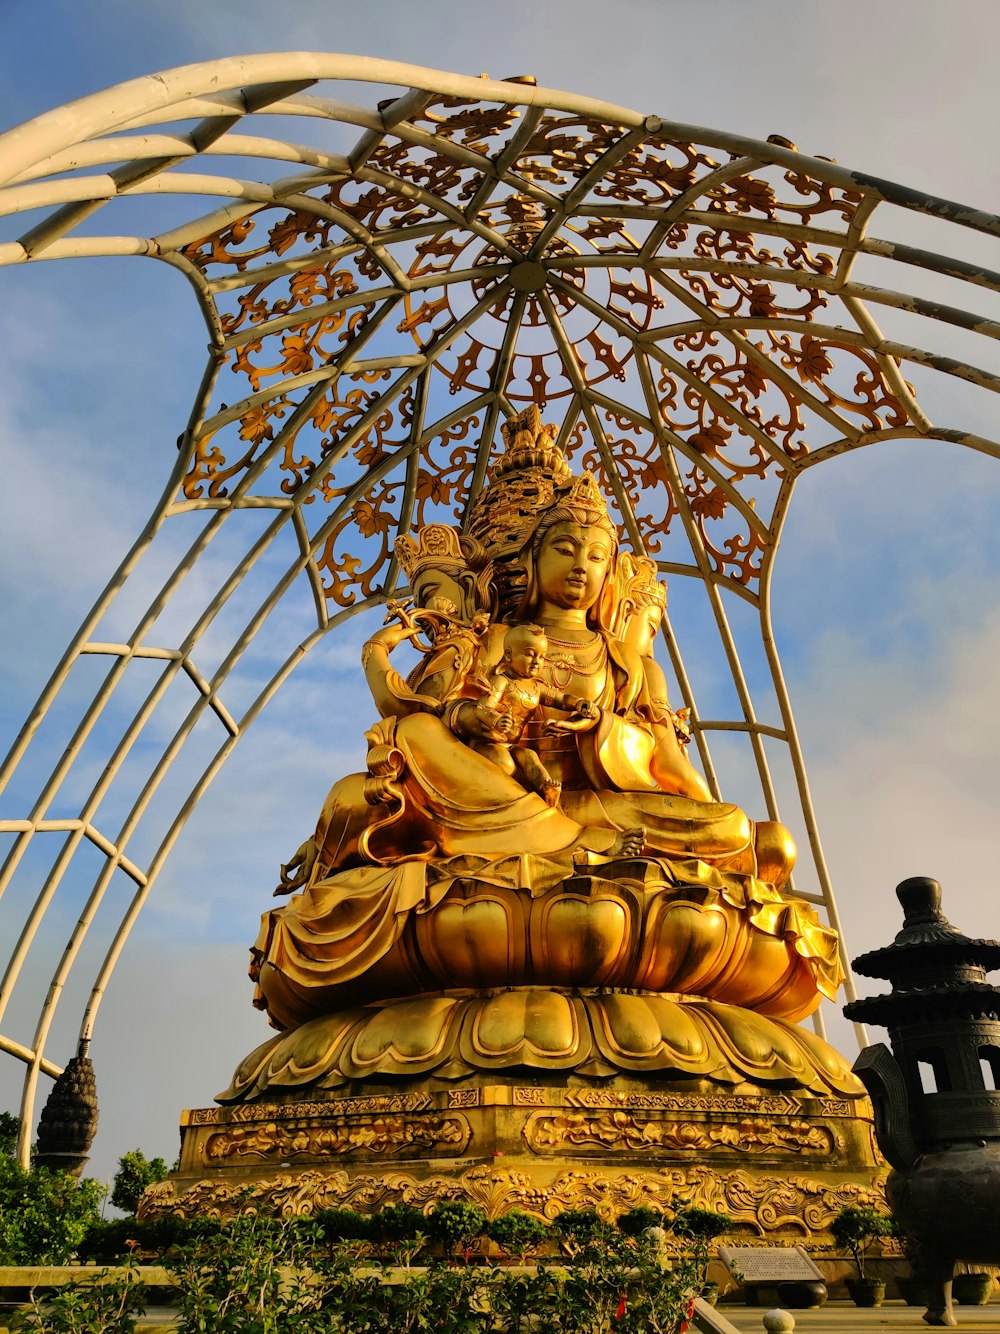 Uma estátua dourada de Buda sentada sob uma estrutura de metal